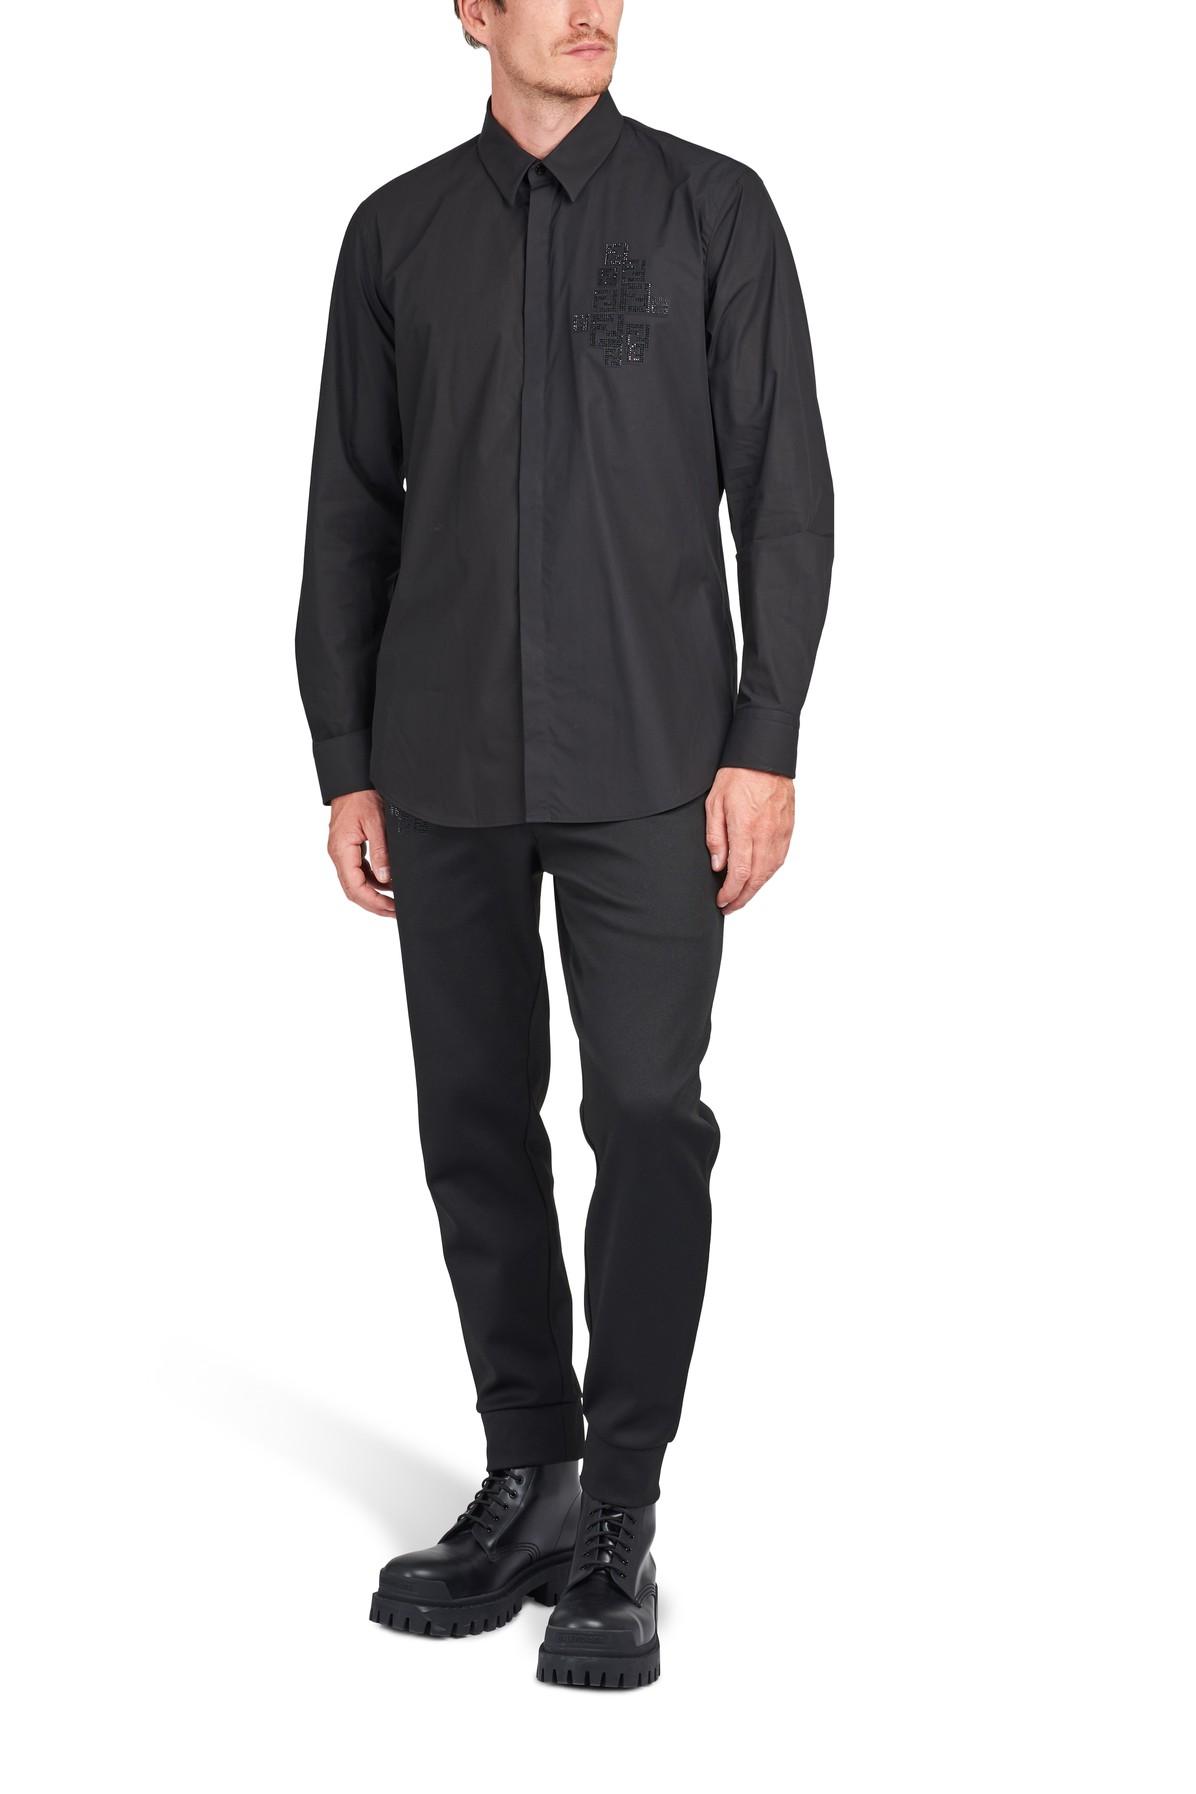 Fendi Ff Strass Long Sleeves Shirt in Black for Men - Lyst